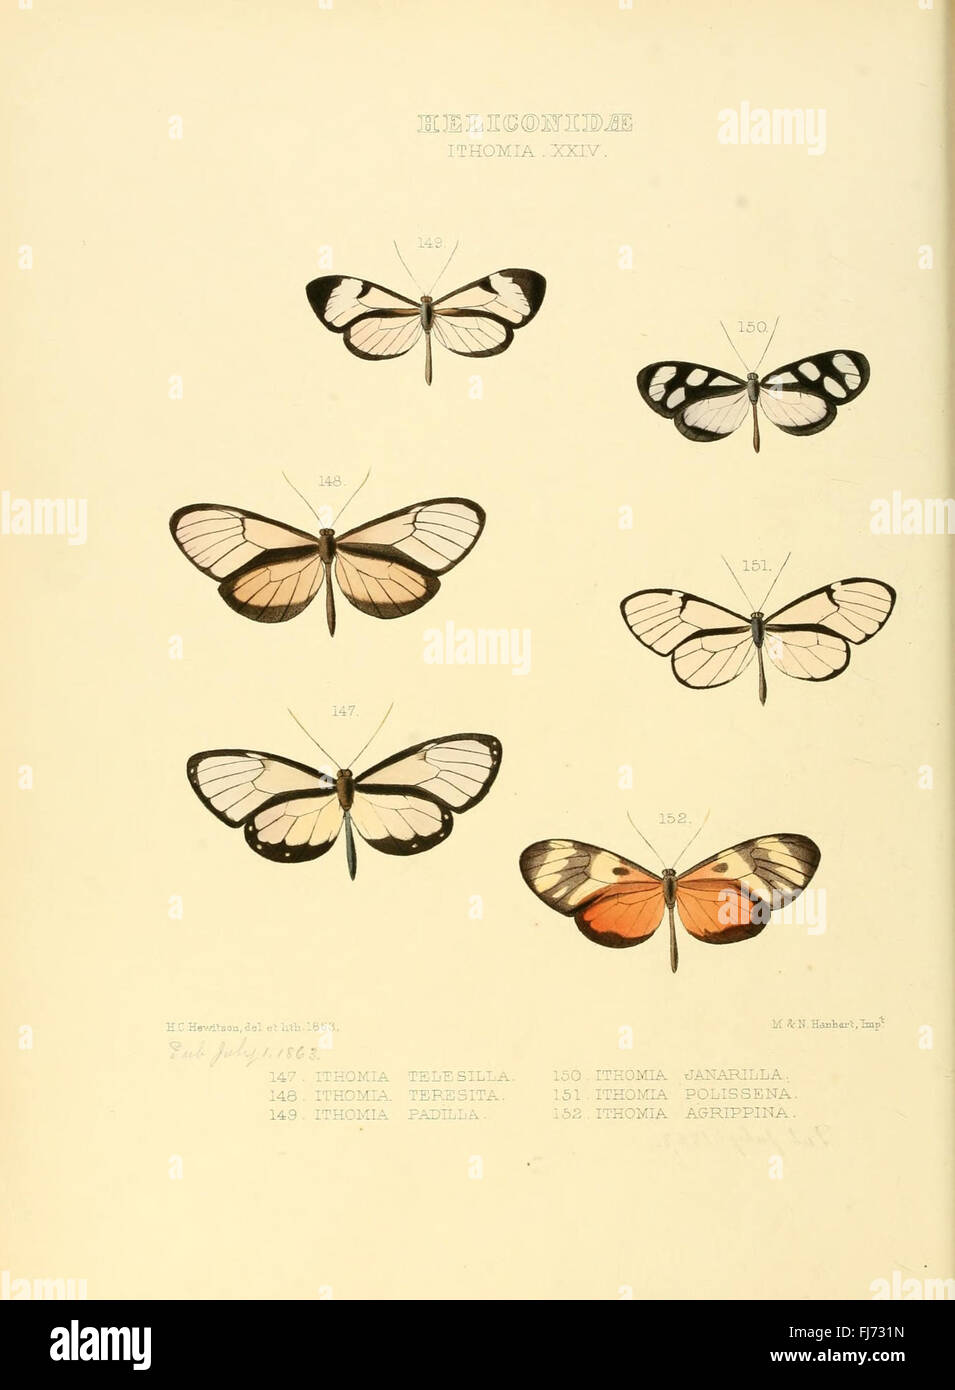 Illustrazioni di nuove specie di farfalle esotiche (Heliconidae- Ithomia XXIV) Foto Stock